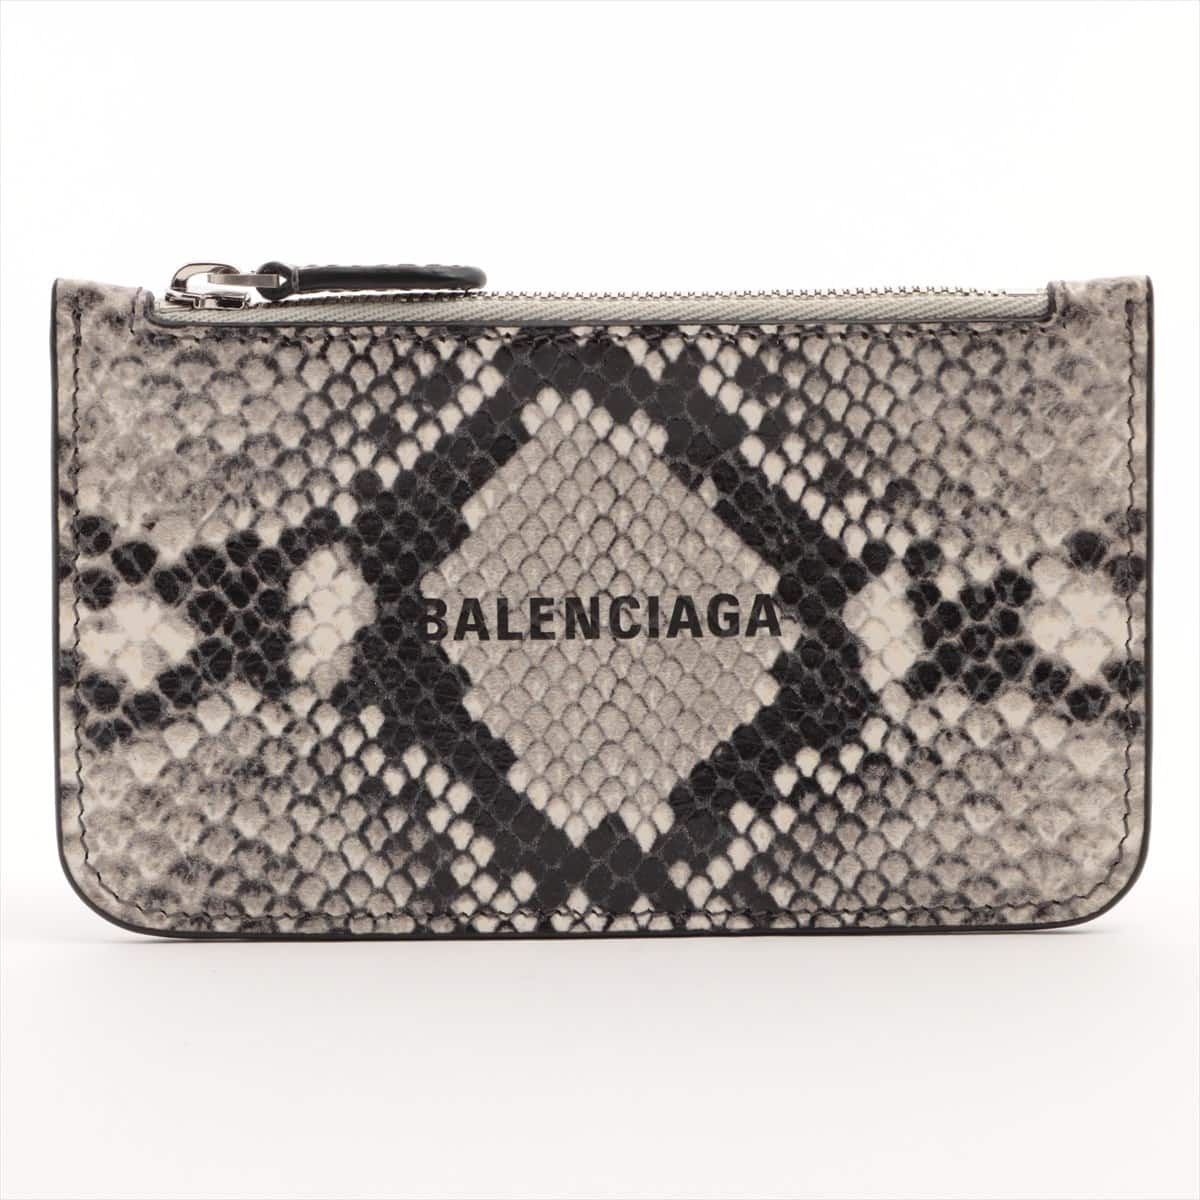 Balenciaga Logo 594214 Leather Coin purse Black x ivory